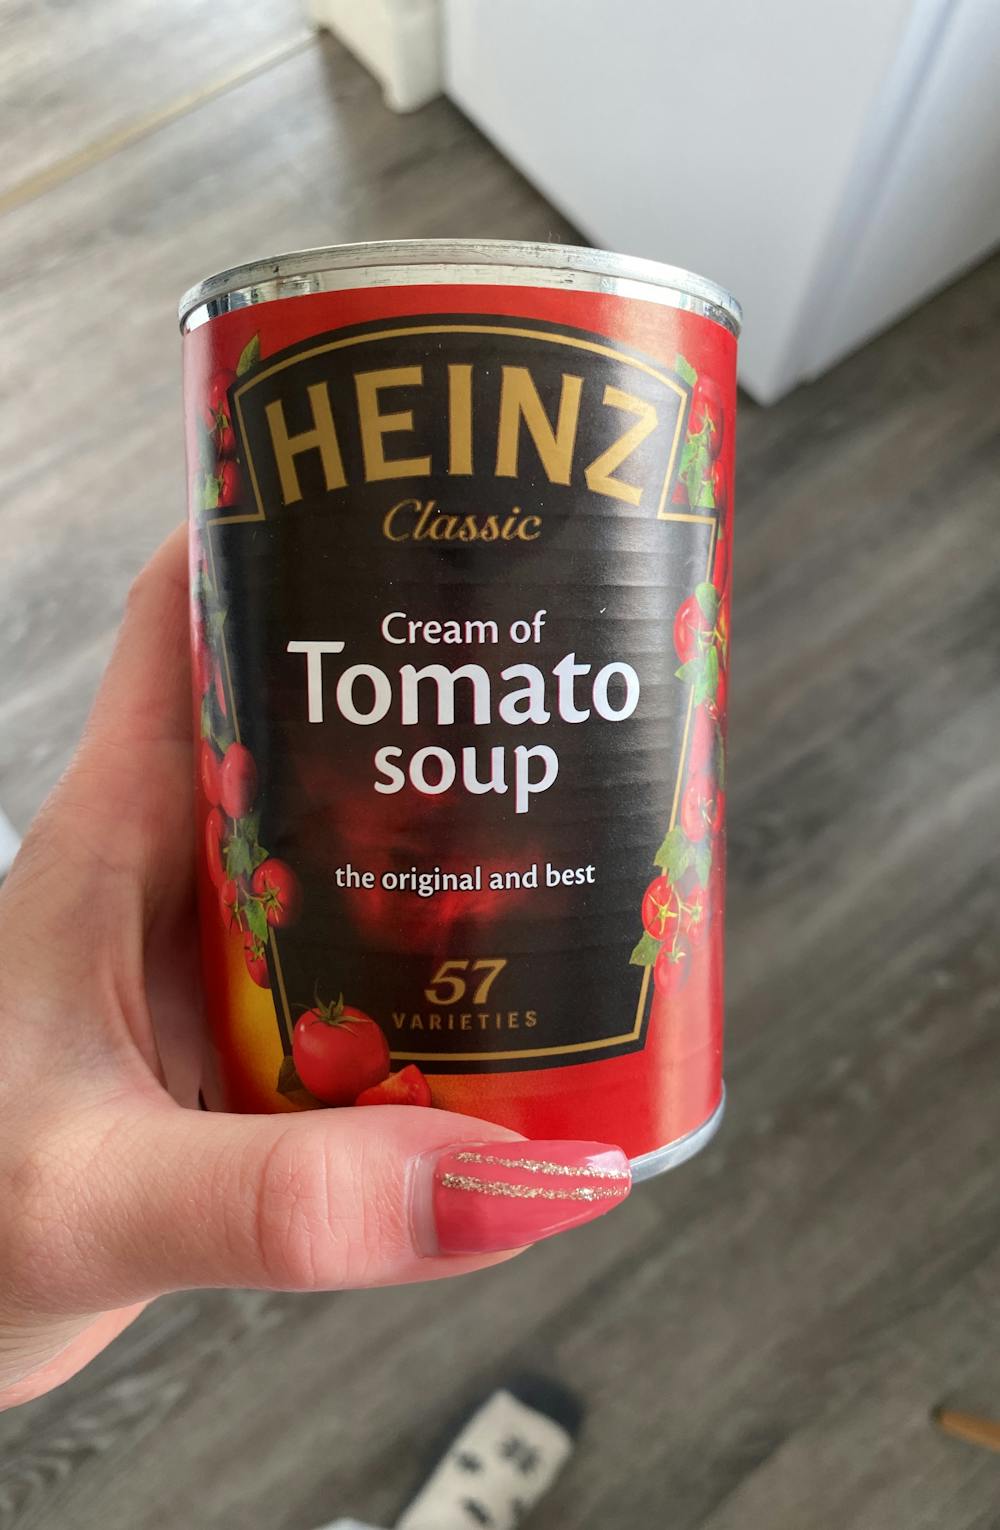 Cream of tomato soup, Heinz